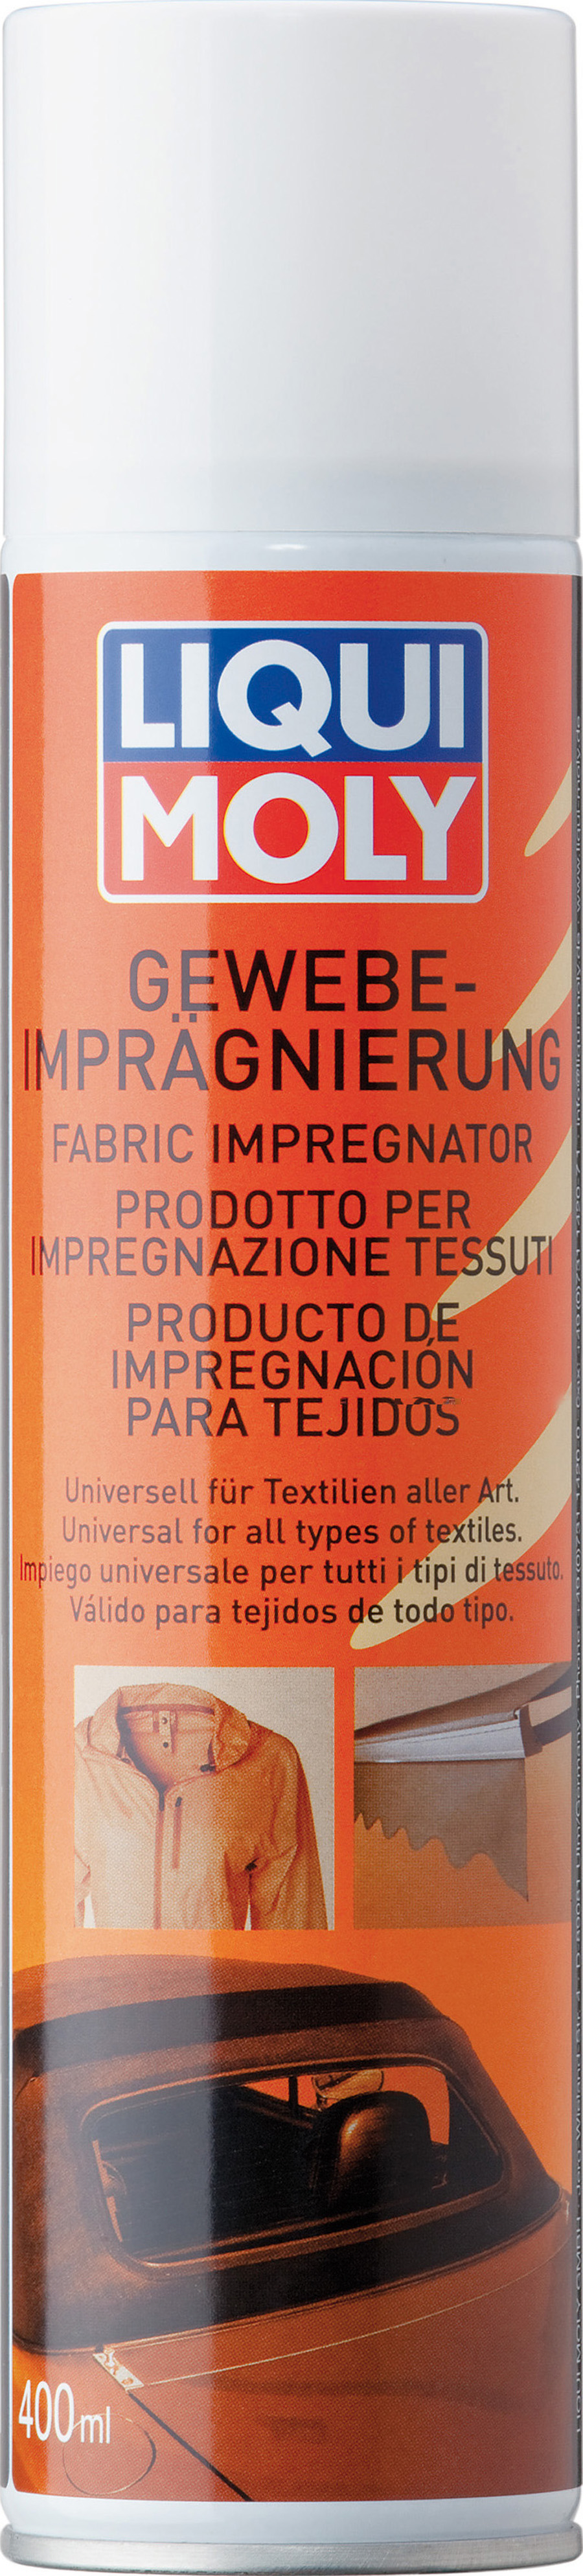 идрозащита кожи и текстиля LIQUI MOLY Gewebe-Impragnierung (0,4 литра)